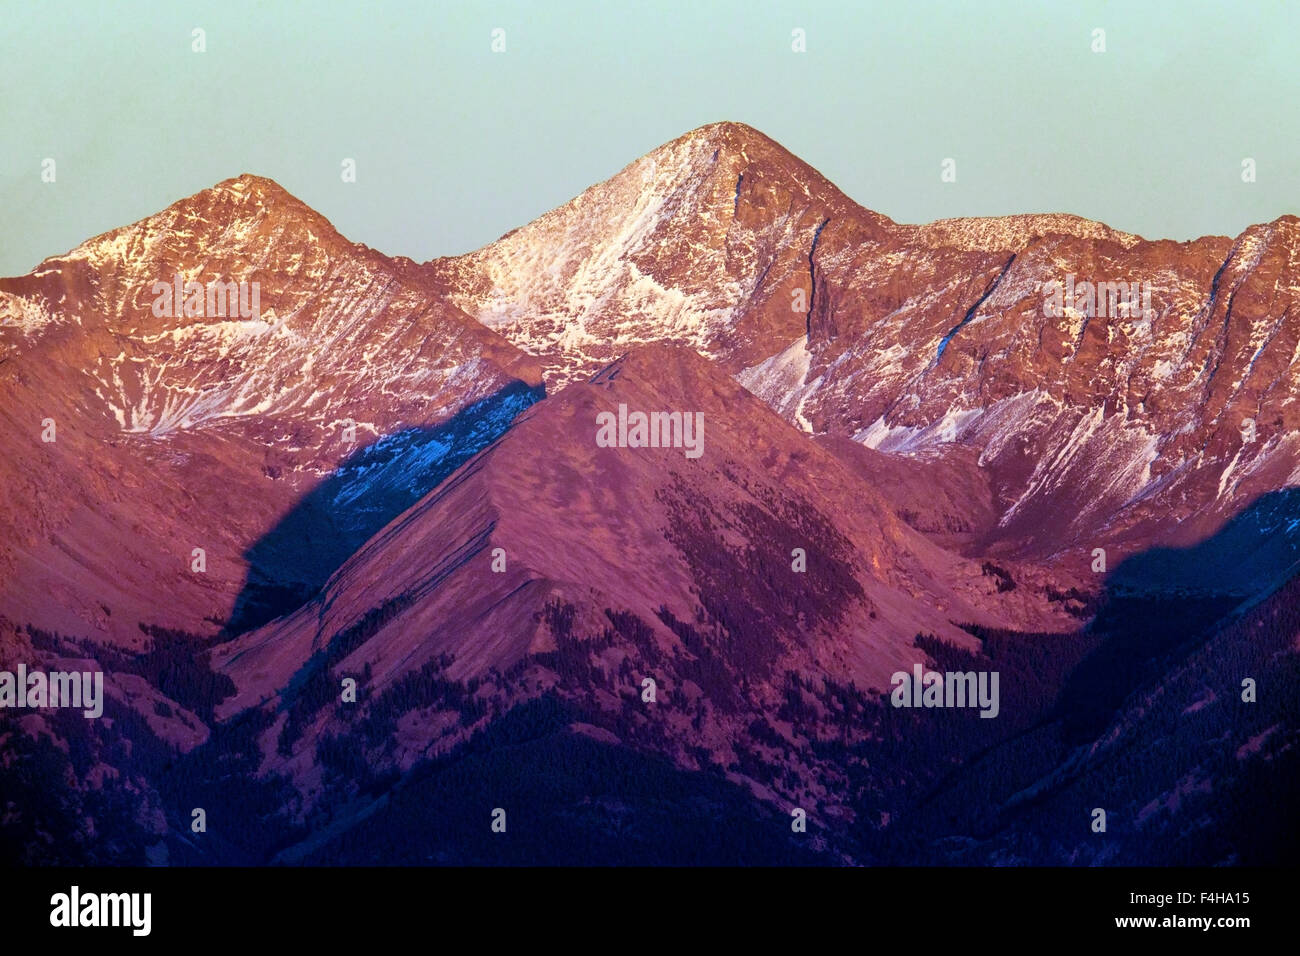 Alpenglow on Blanca Peak, elevation 14,345', Sangre de Cristo Mountains, San Luis Valley, Colorado, USA Stock Photo